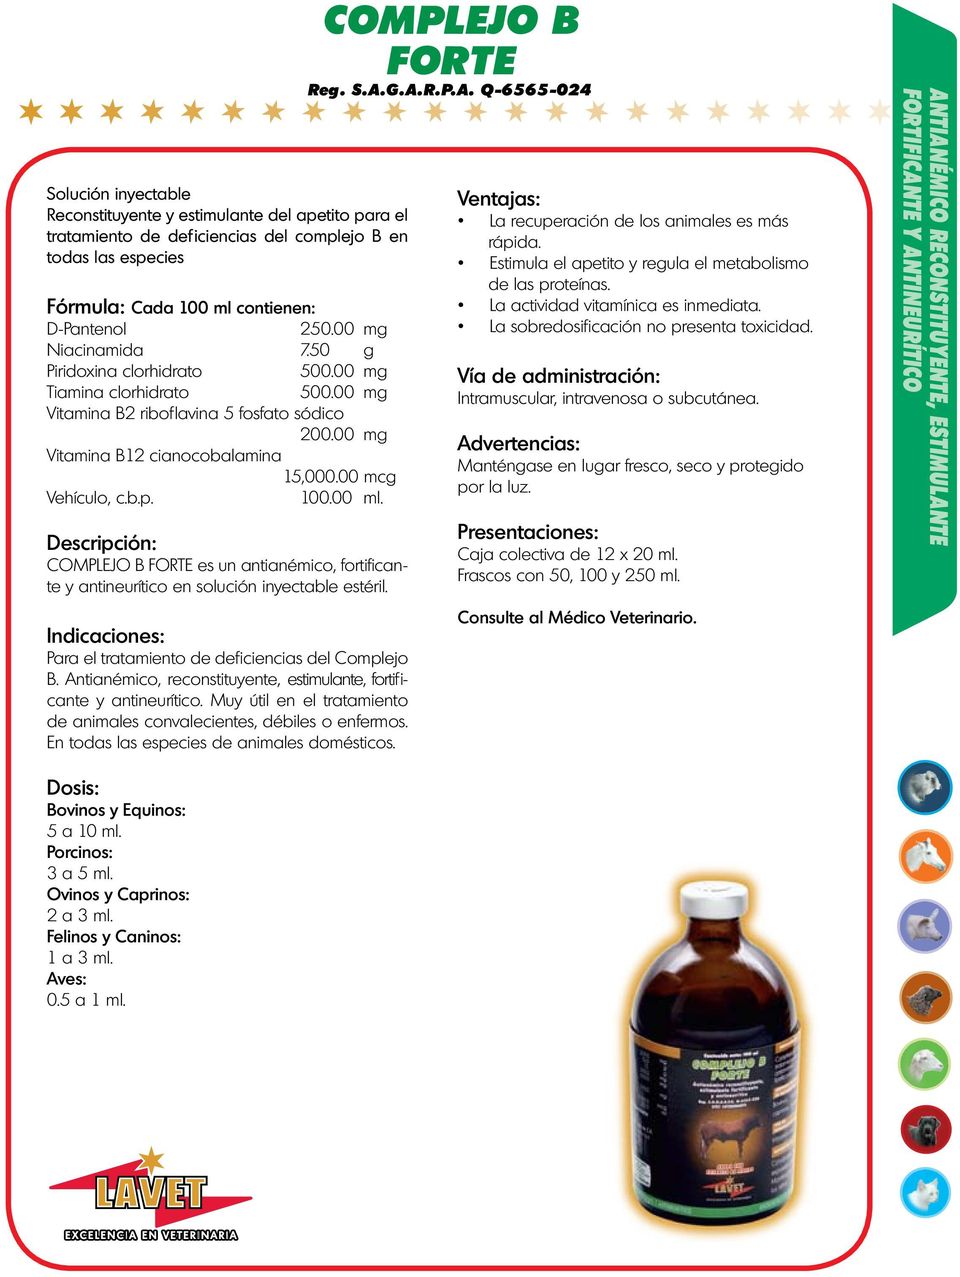 COMPLEJO B FORTE es un antianémico, fortif icante y antineurítico en solución inyectable estéril. Para el tratamiento de def iciencias del Complejo B.